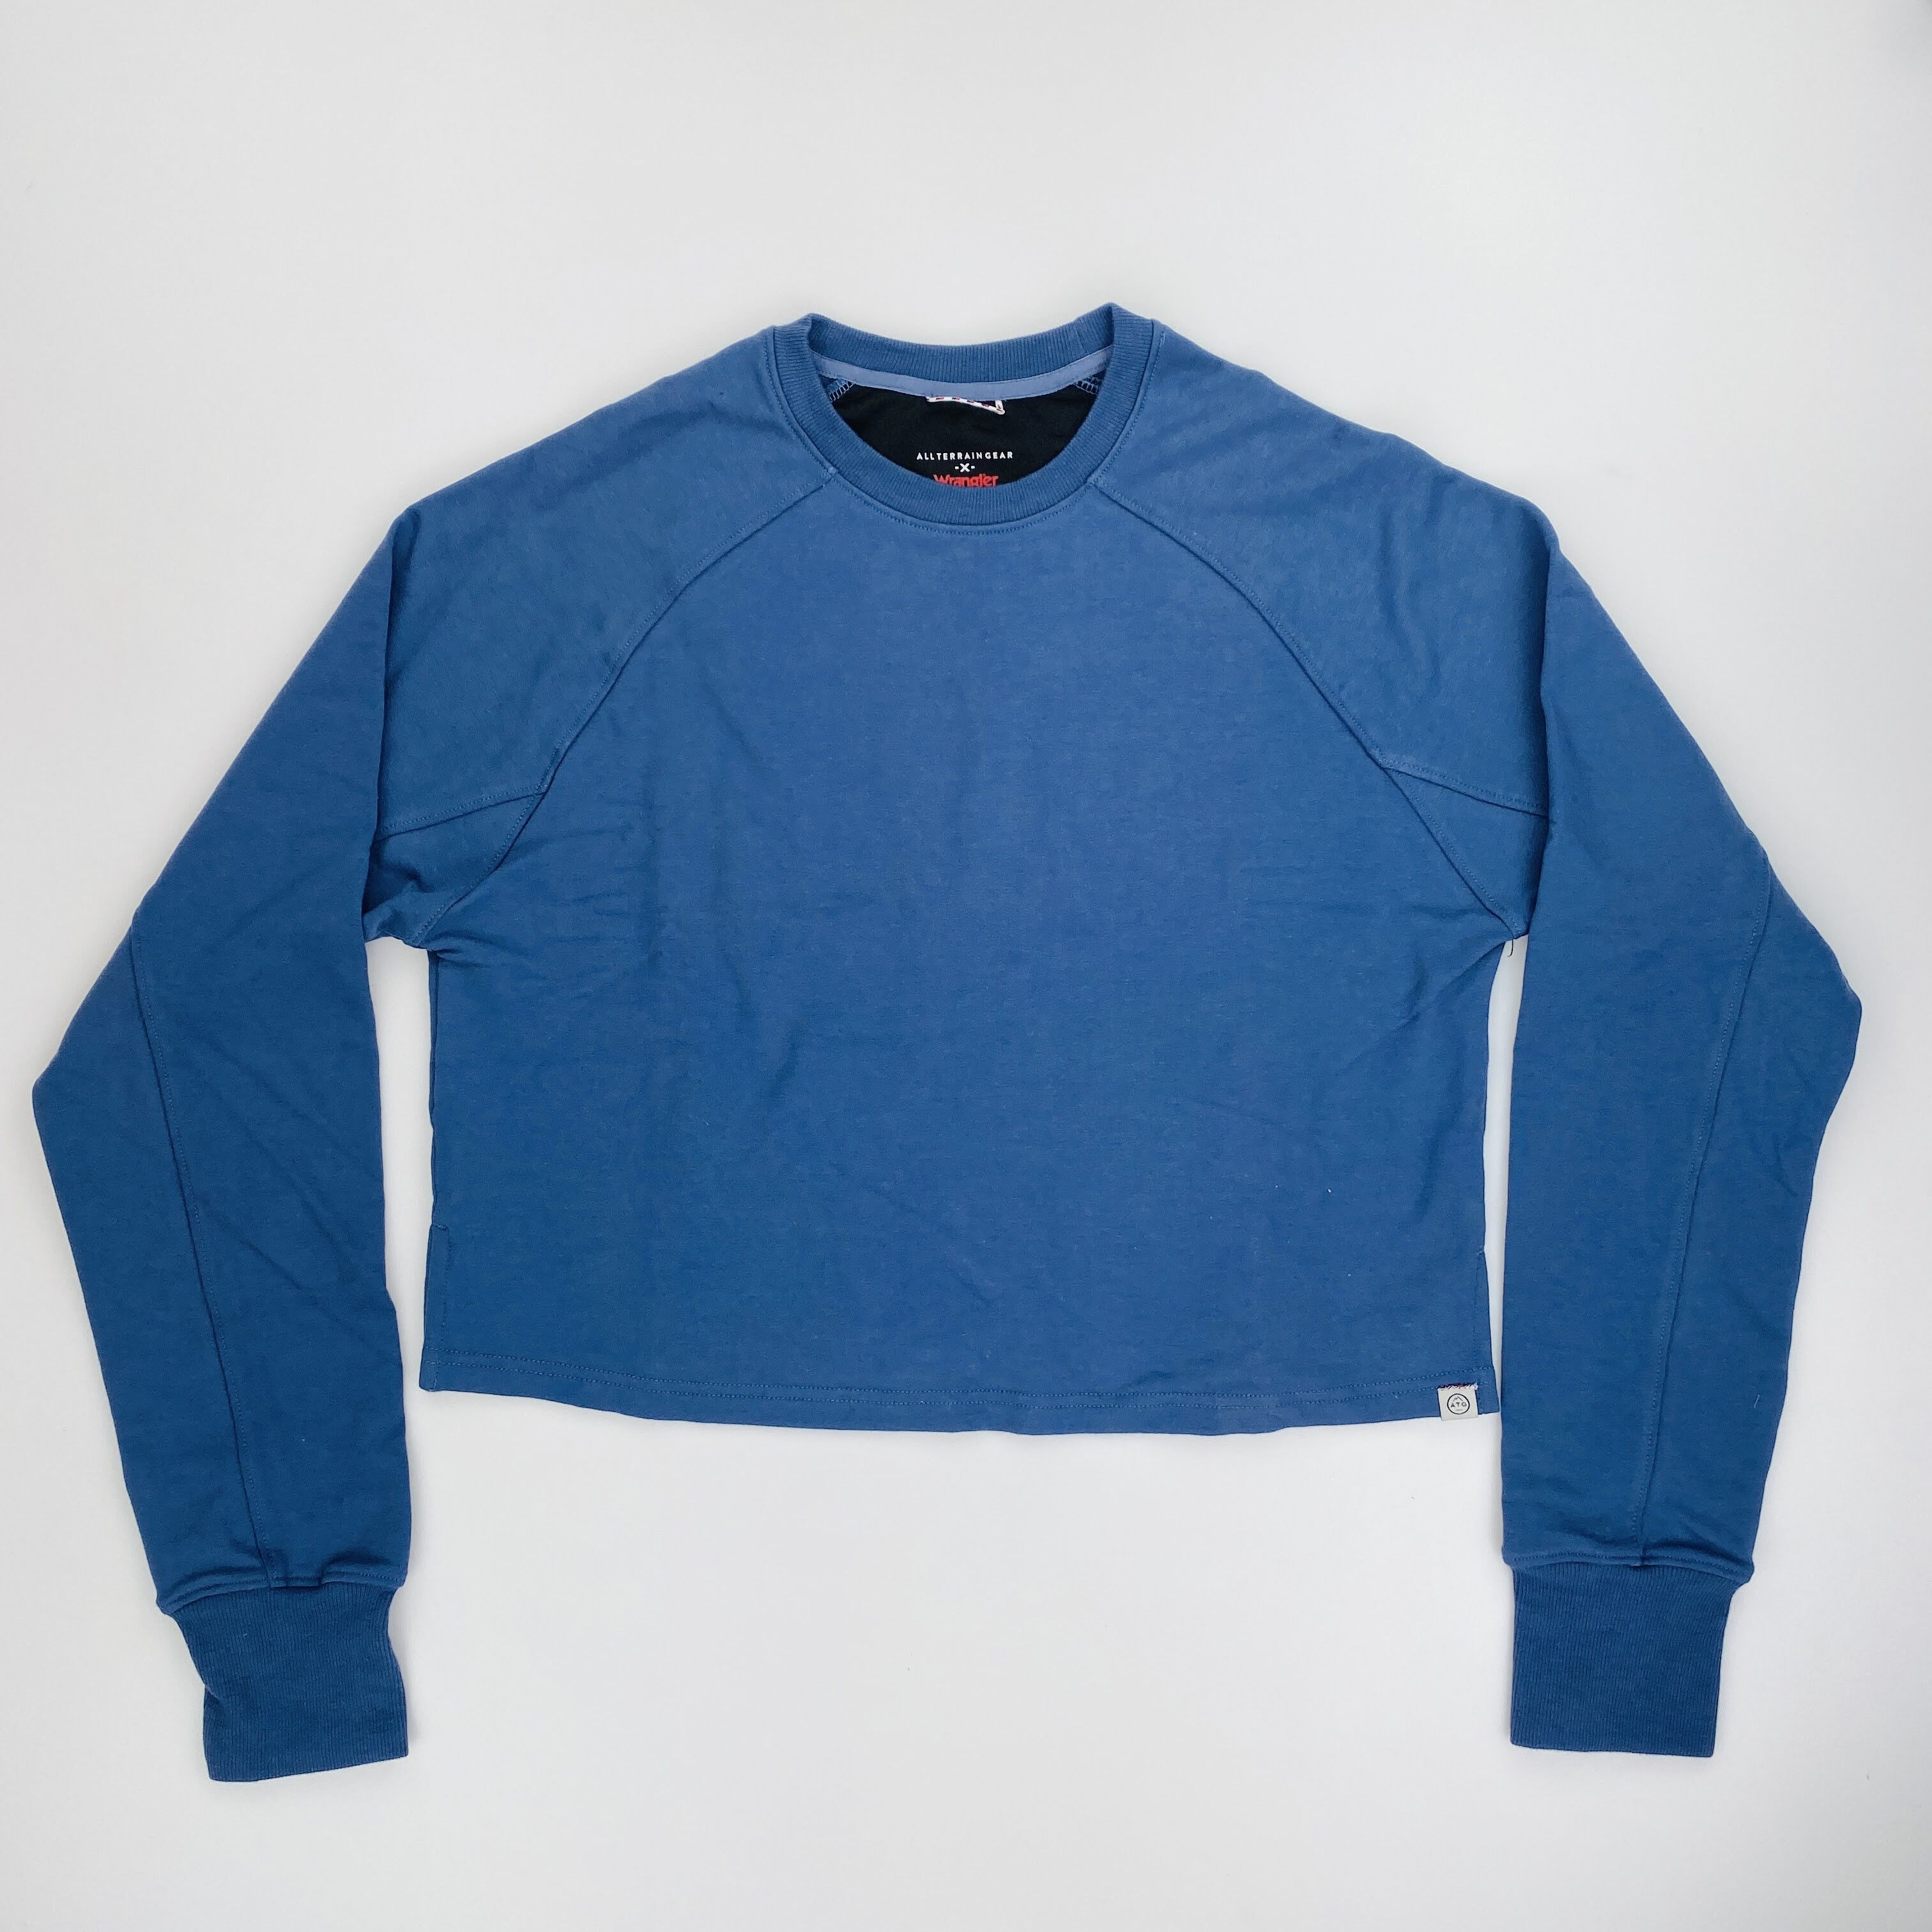 Wrangler Cropped Sweatshirt - Seconde main Sweatshirt femme - Bleu - S | Hardloop